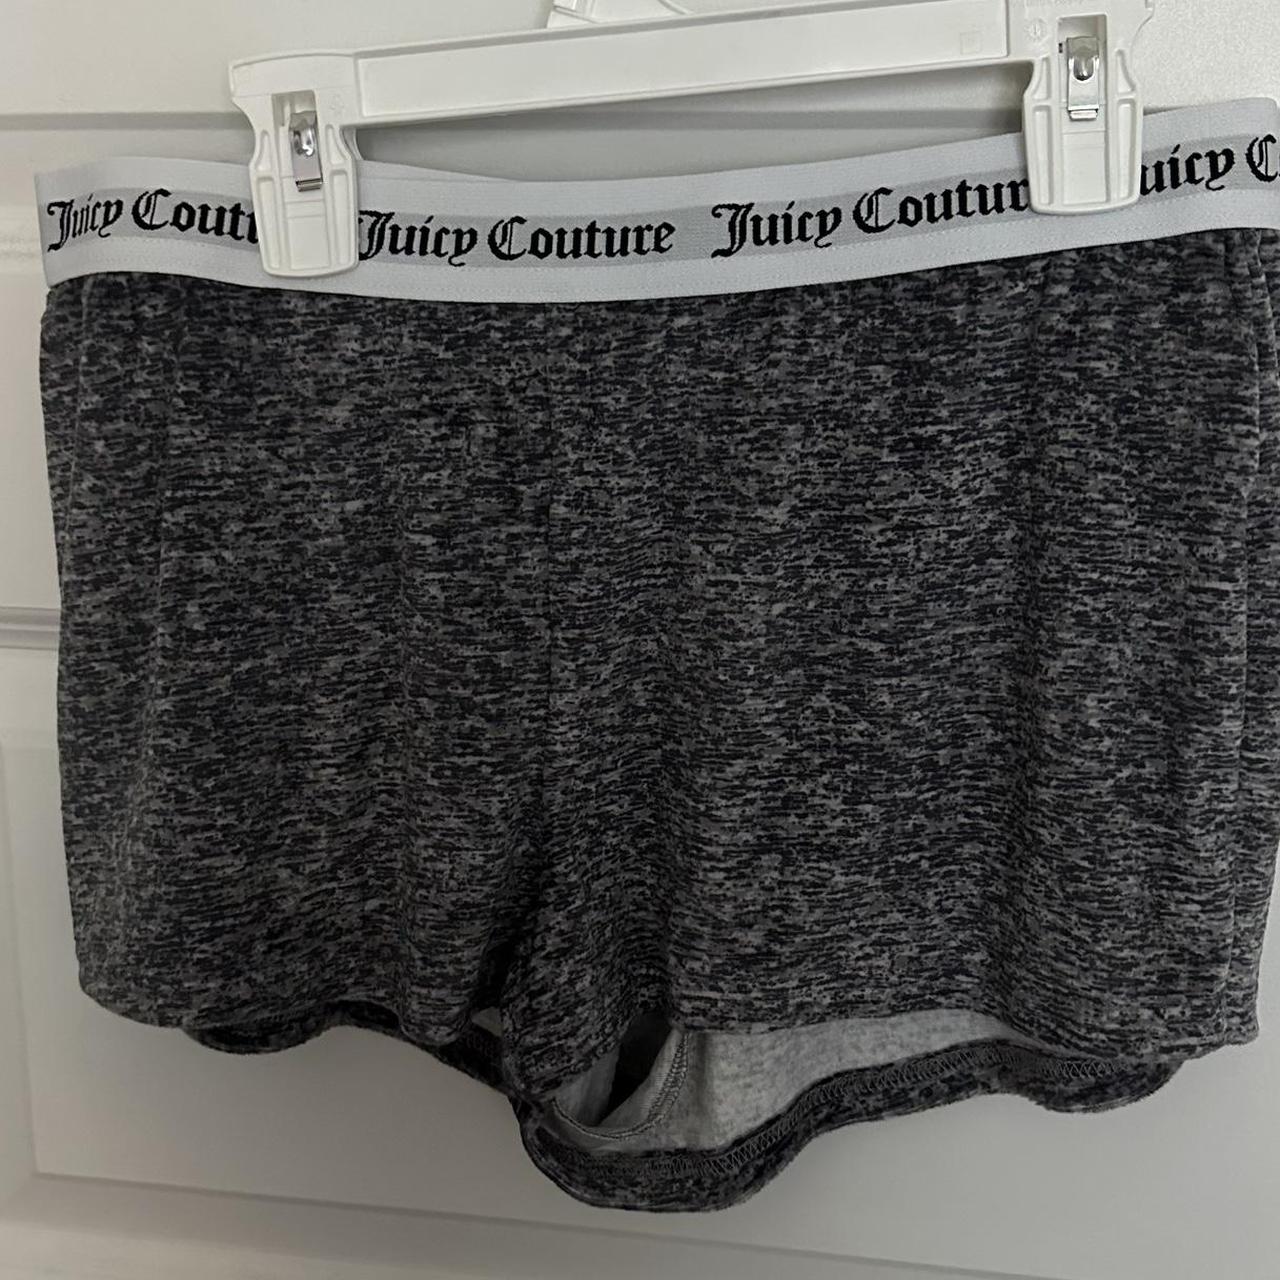 Juicy Couture Rhinestone Sleepwear Shorts #juicy - Depop